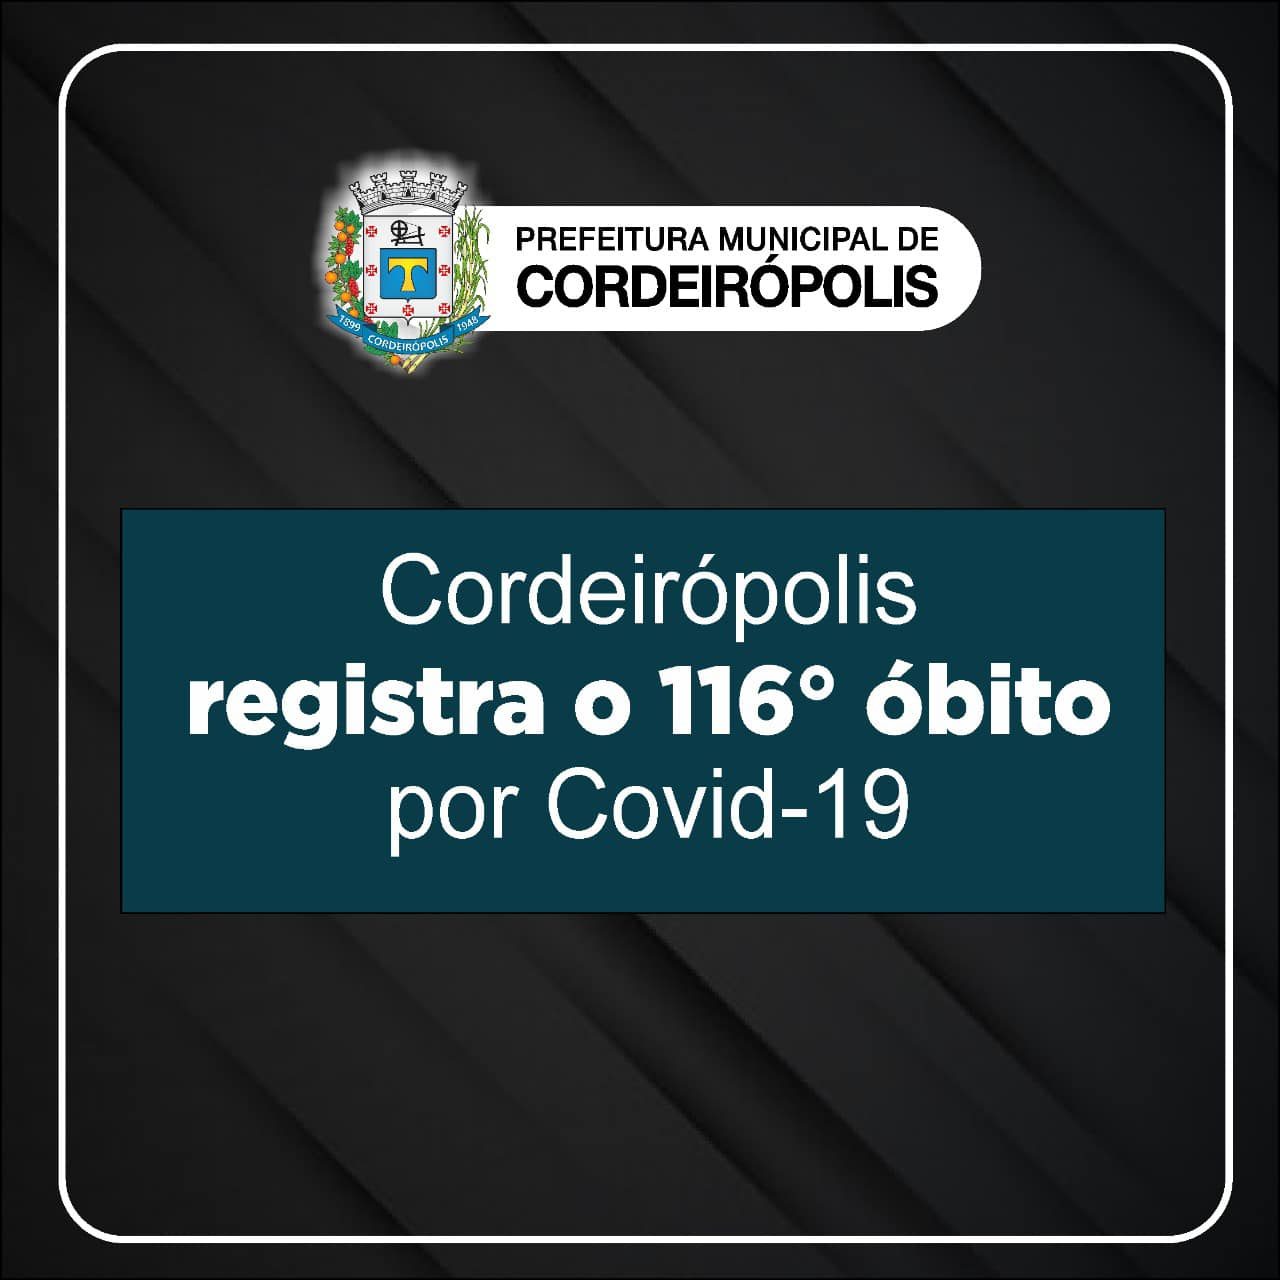 Cordeirópolis registra o 116º óbito por covid-19